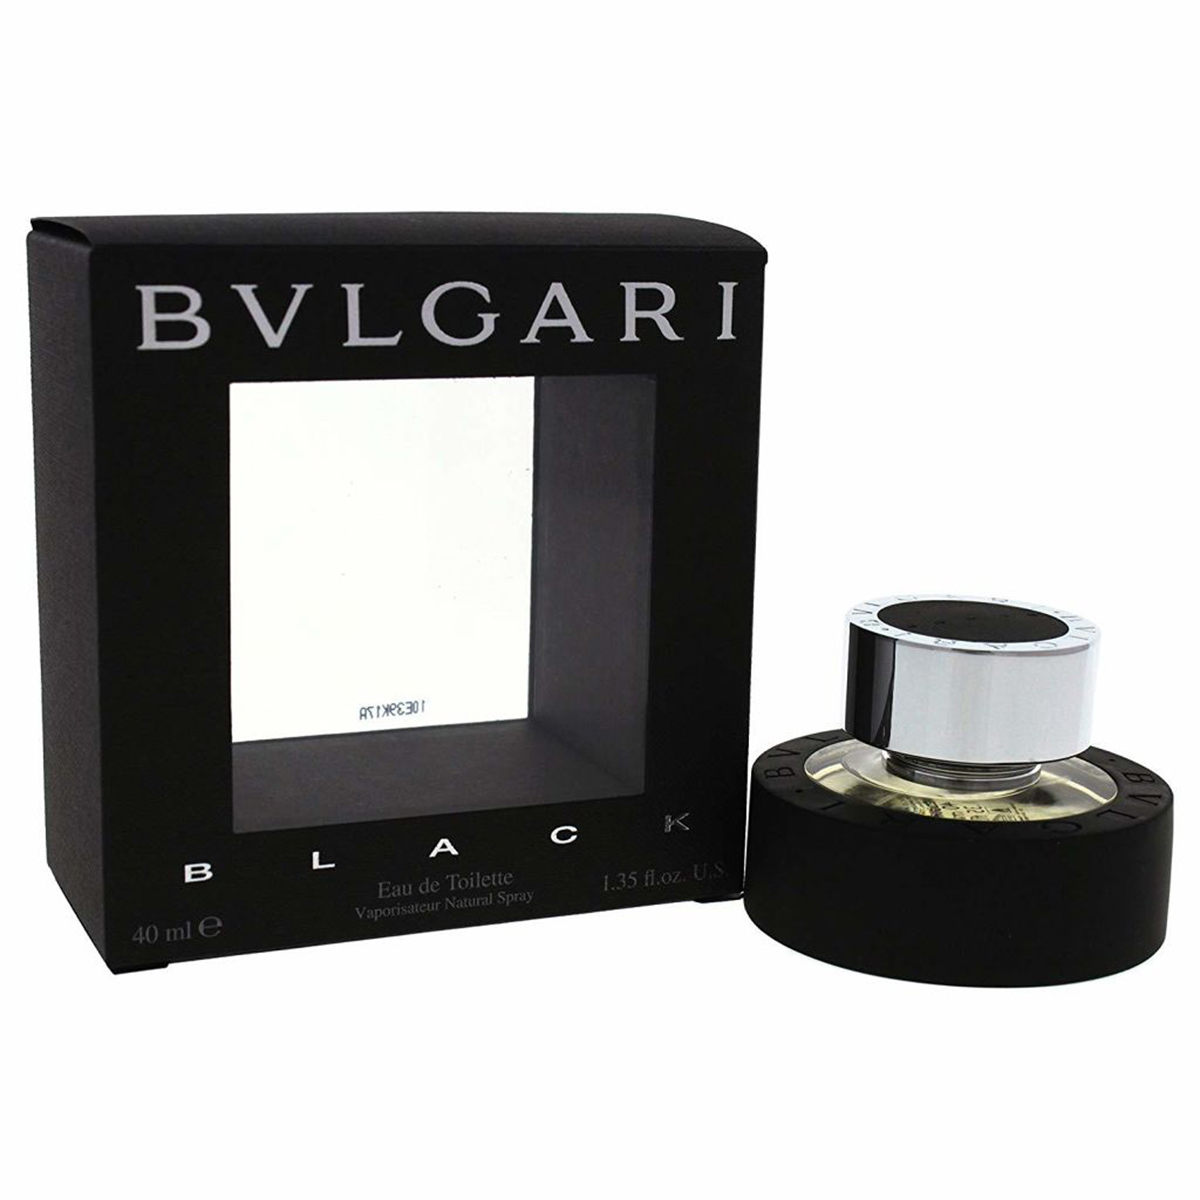 BVLGARI ブルガリ ブラック オードトワレ 40ml 男性用香水、フレグランス